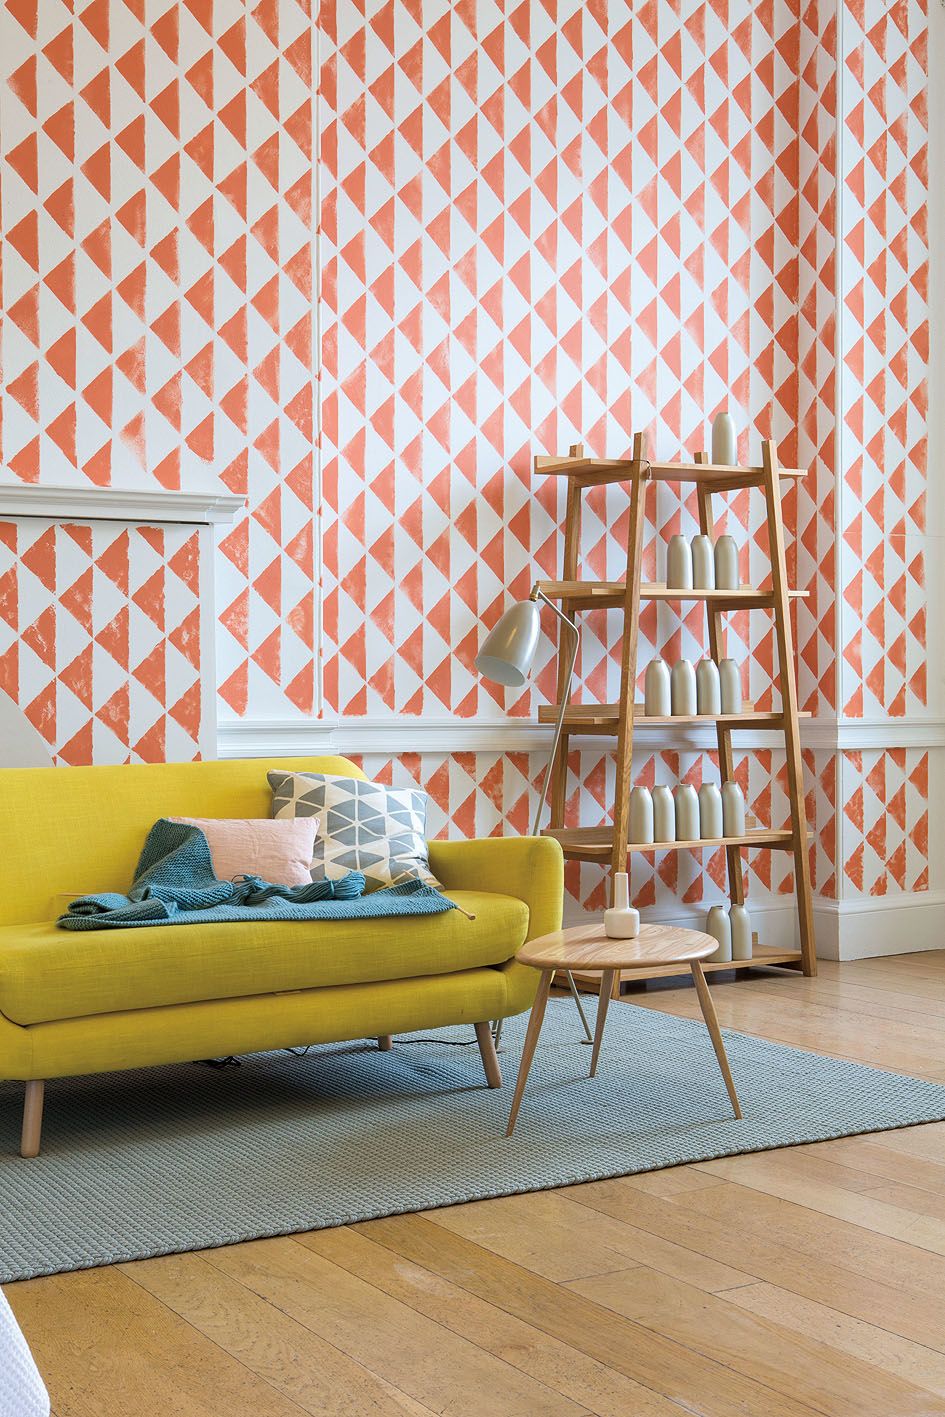 Oranžový retro vzor a žlutá sedačka dodávají obývacímu pokoji punc vitality. 